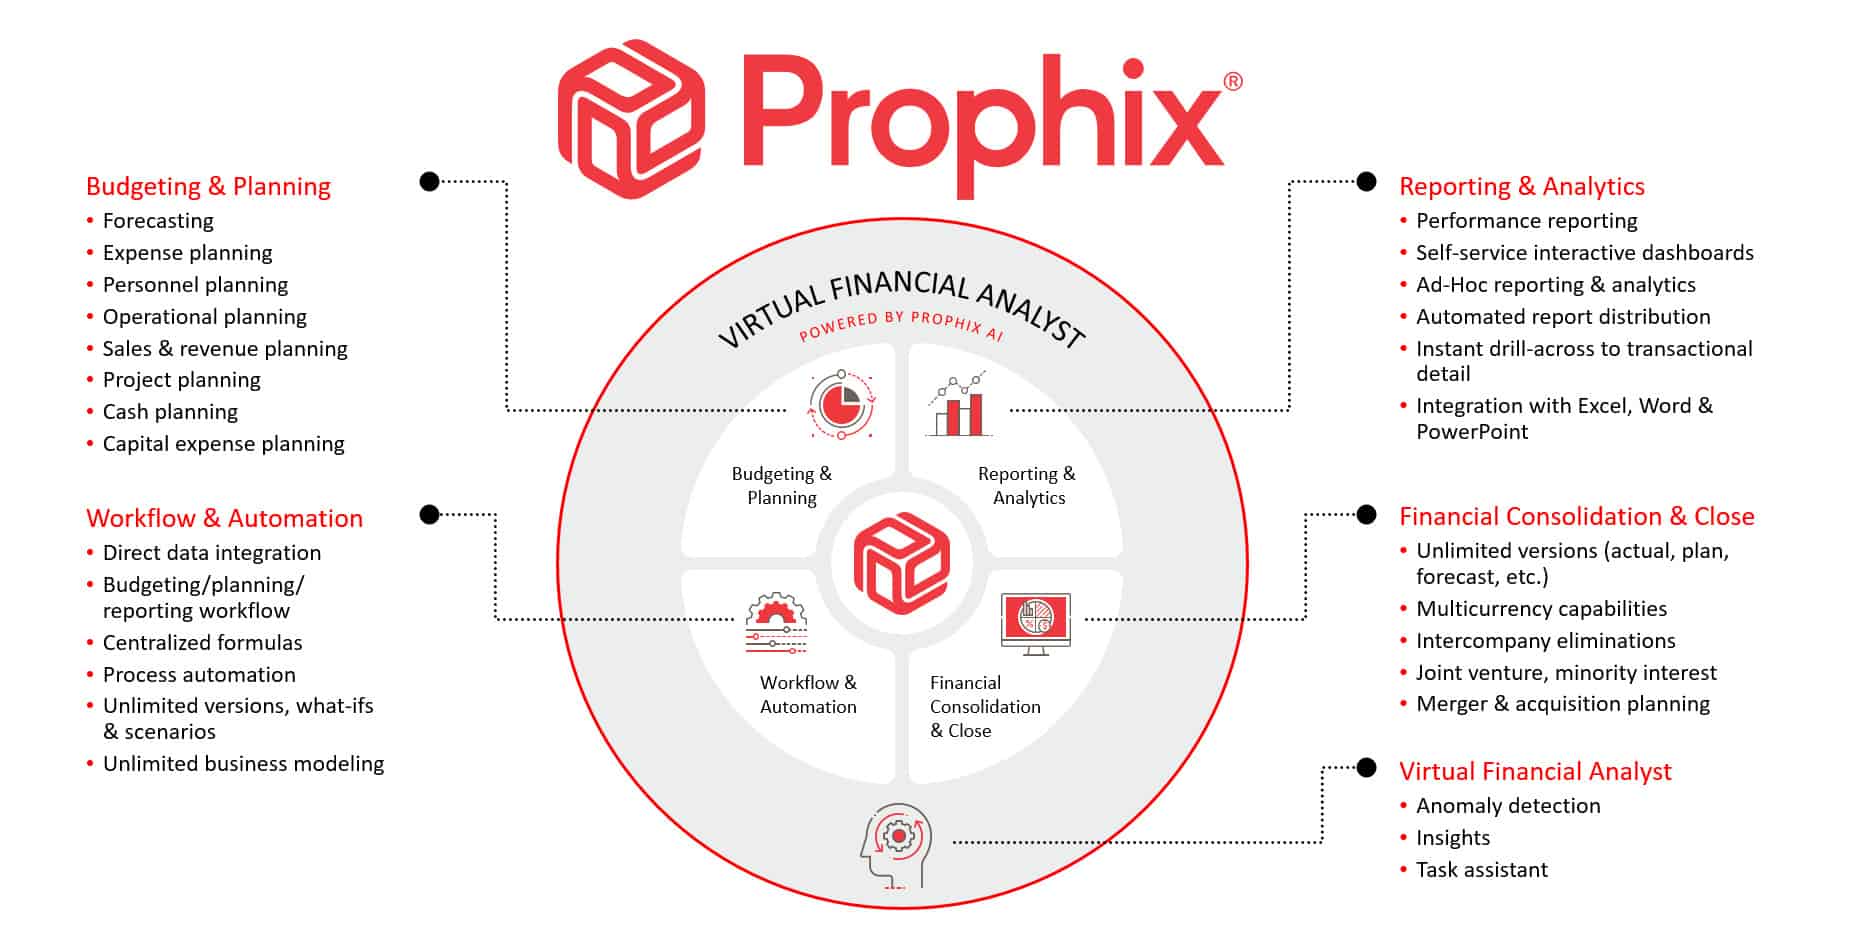 2021 Prophix capabilities